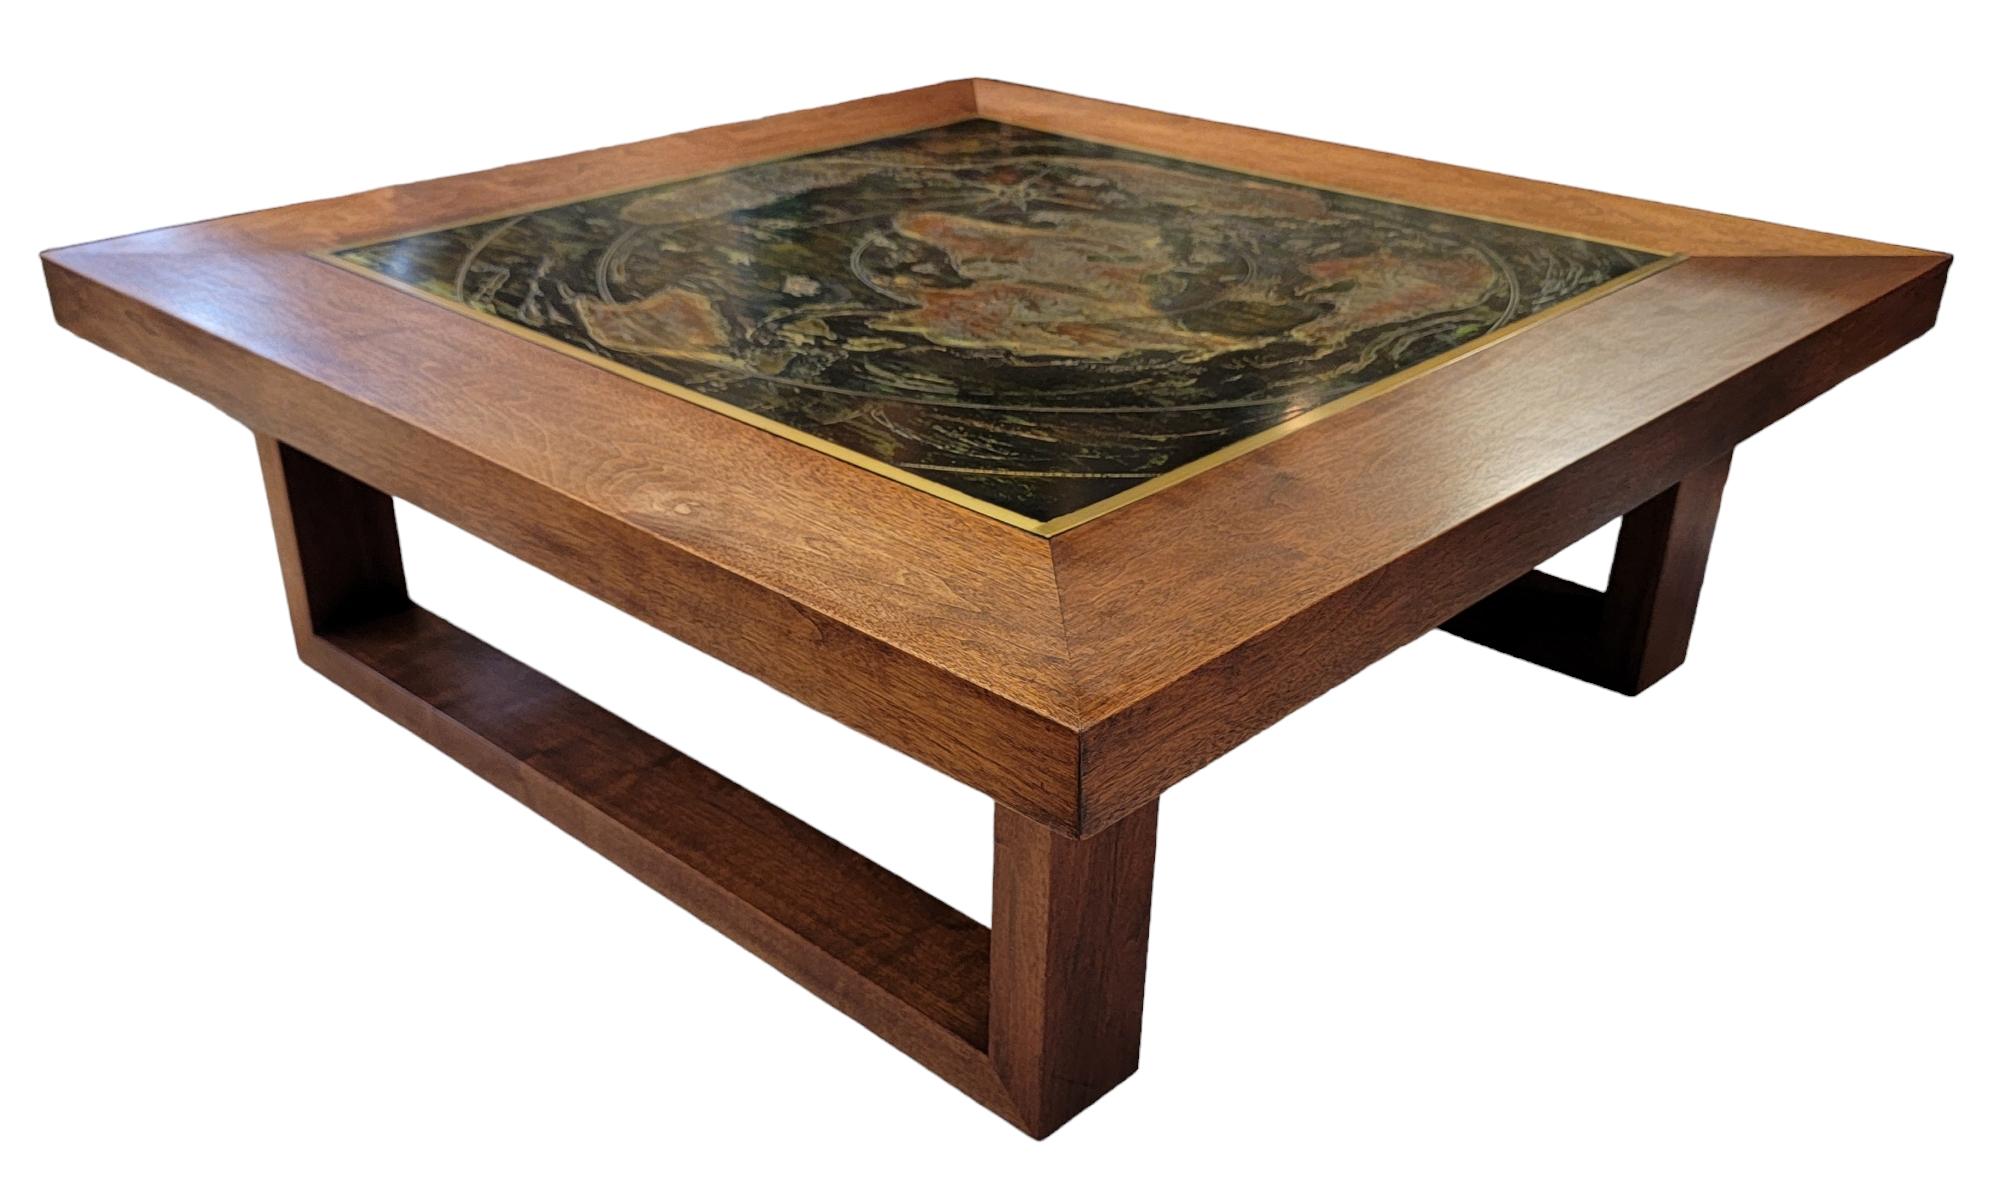 Wunderschöner Bernhard Rohne Couchtisch aus Holz mit einer schönen Tischplatte aus oxidiertem Messing. 
Das Holz hat ein sauberes, geradliniges Aussehen. Mit minimalen Gebrauchsspuren.
Das oxidierte Messing, das auf dem Couchtisch platziert wurde,